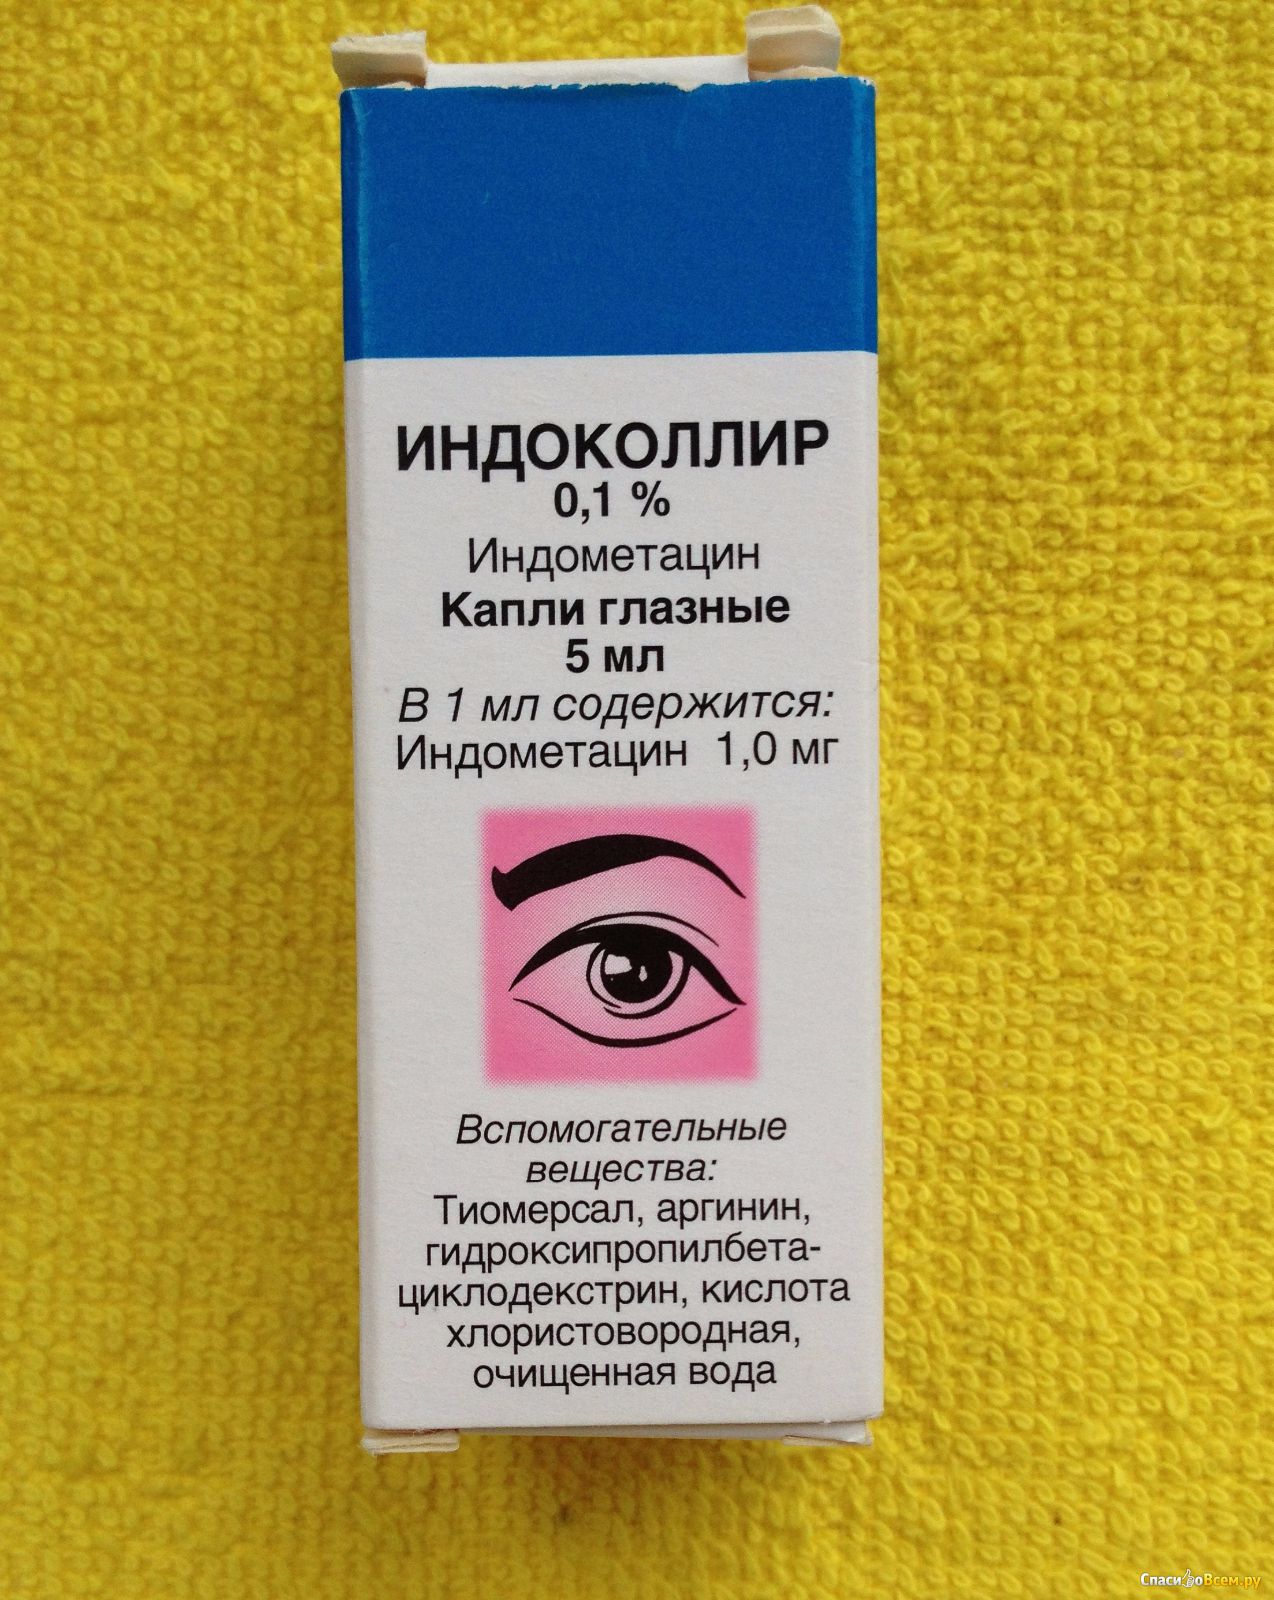 Индометацин глазные капли инструкция по применению цена отзывы аналоги